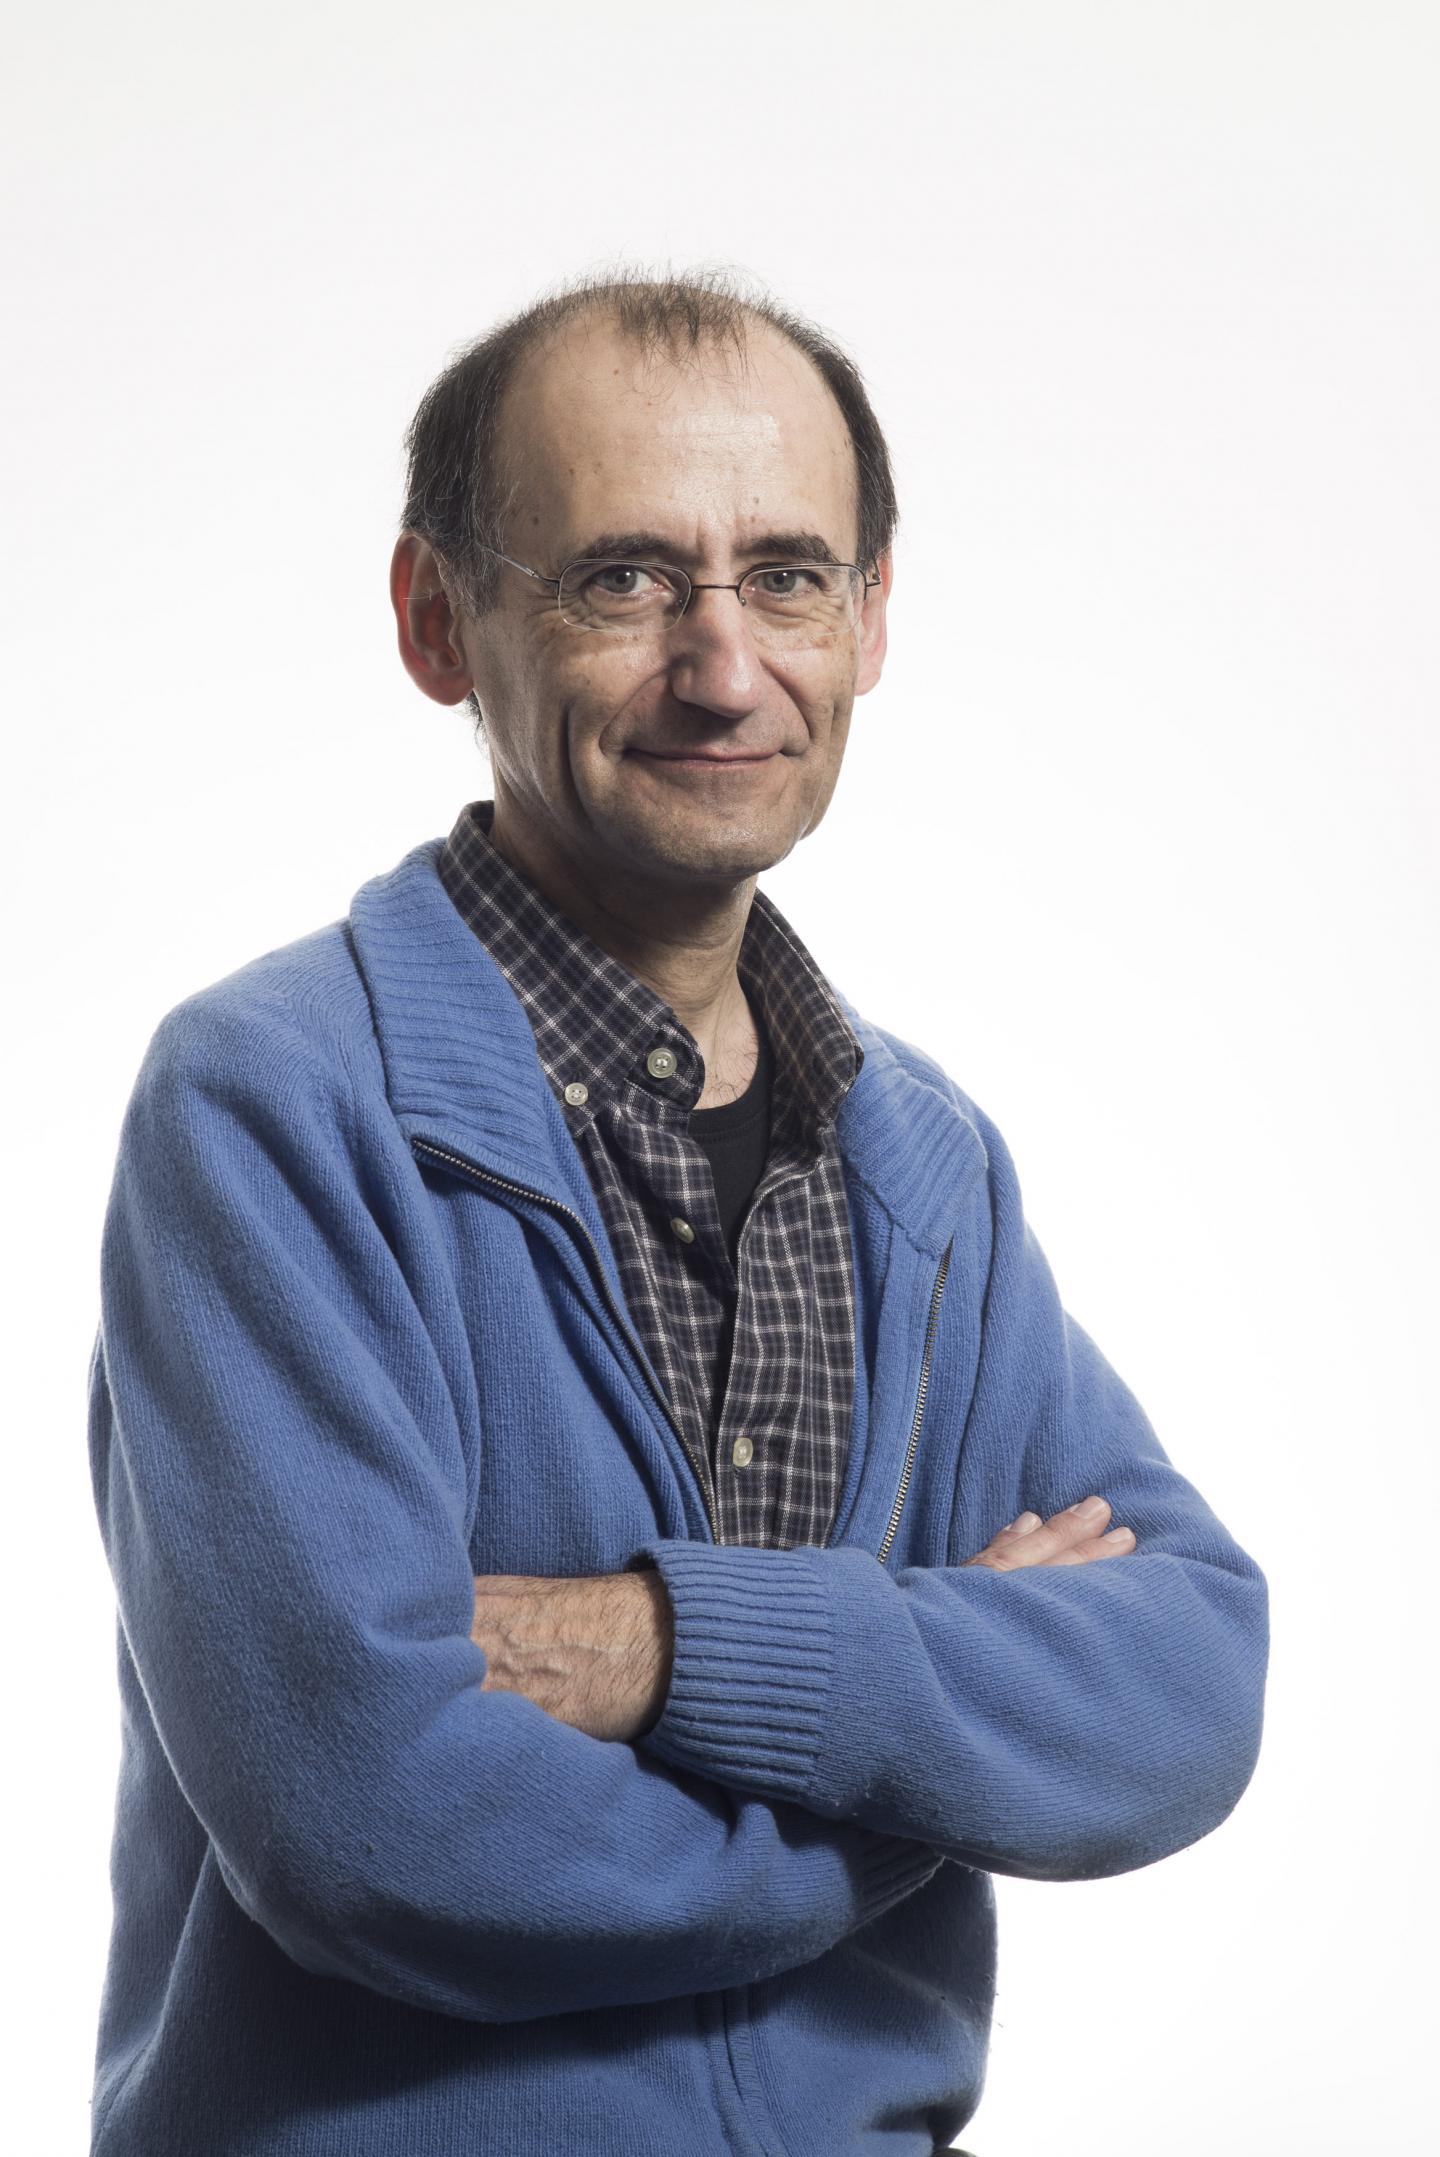 Jordi Casanova, Instituto de Biología Molecular de Barcelona